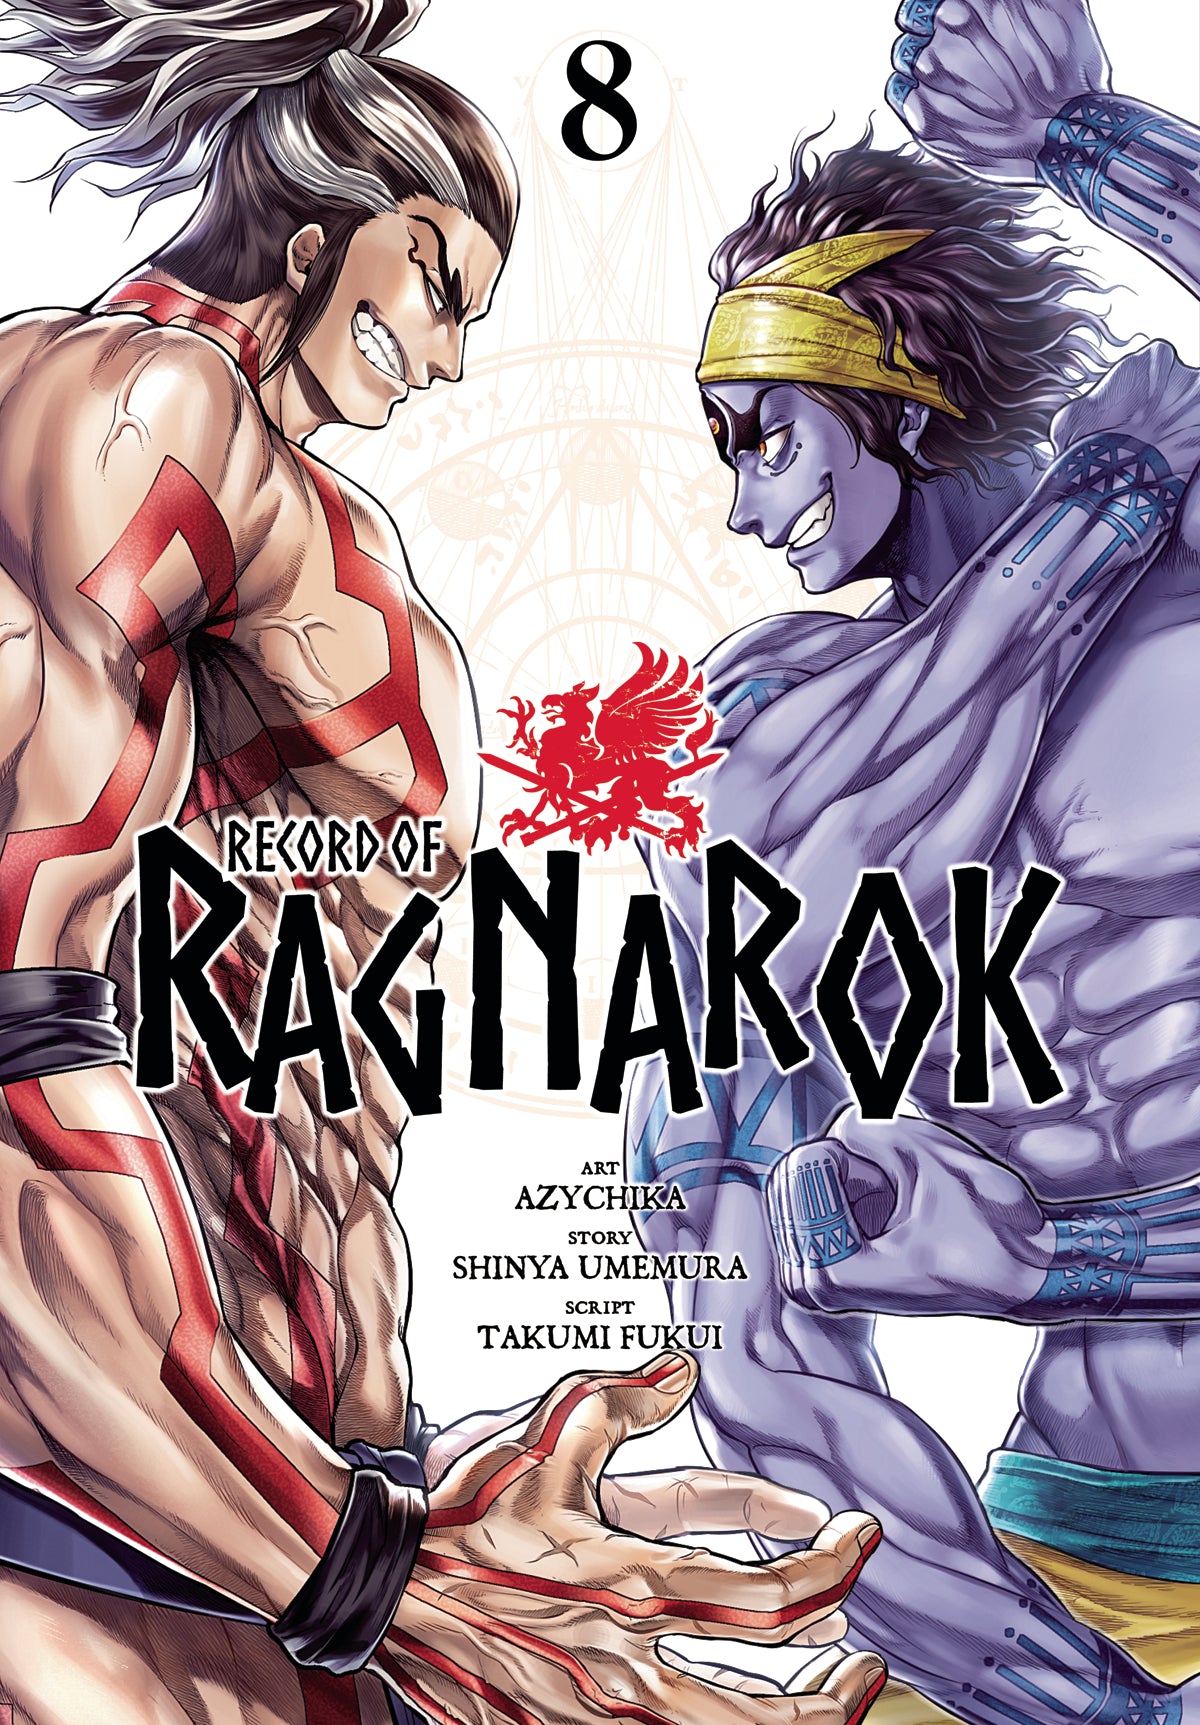 Record of ragnarok vol 1